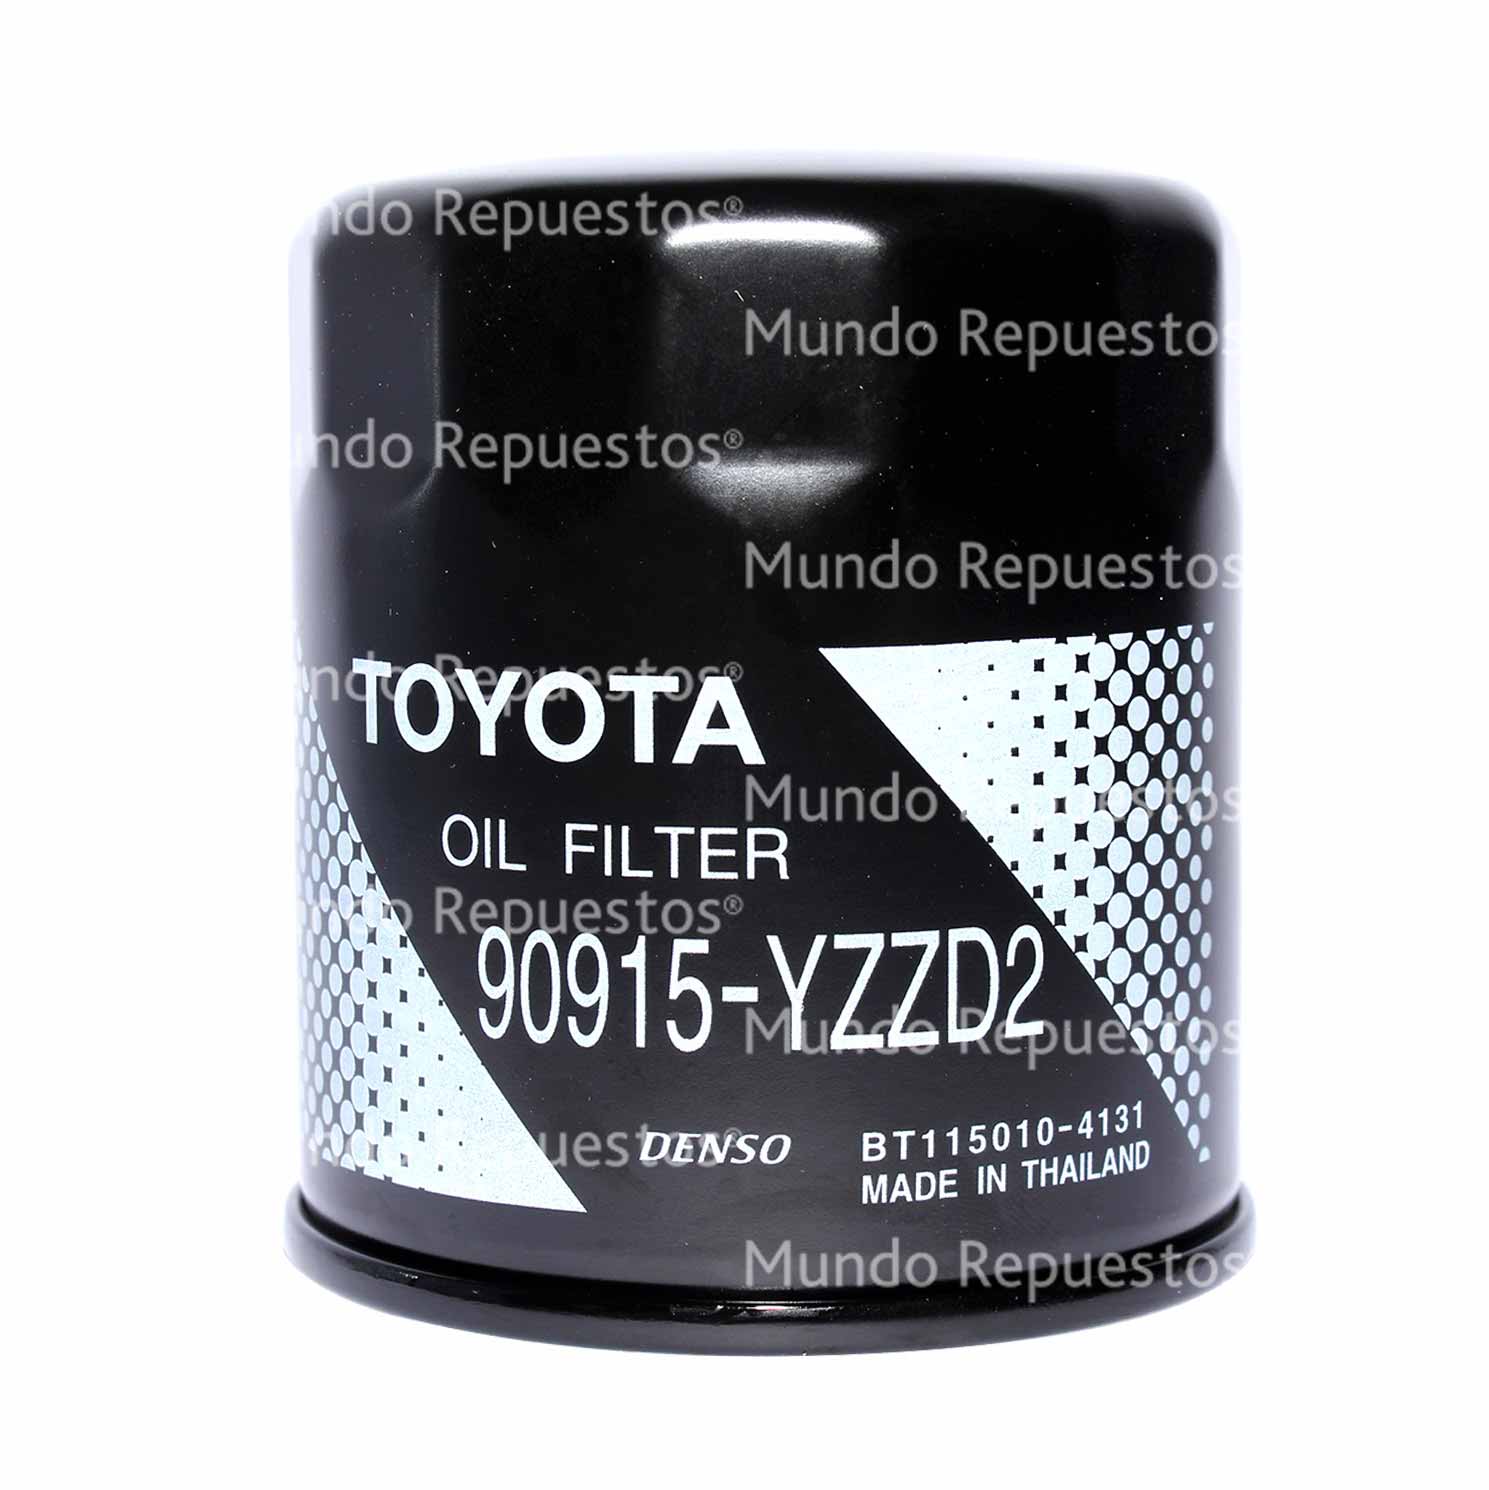 Filtro aceite marca Toyota original disponible en Mundo Repuestos